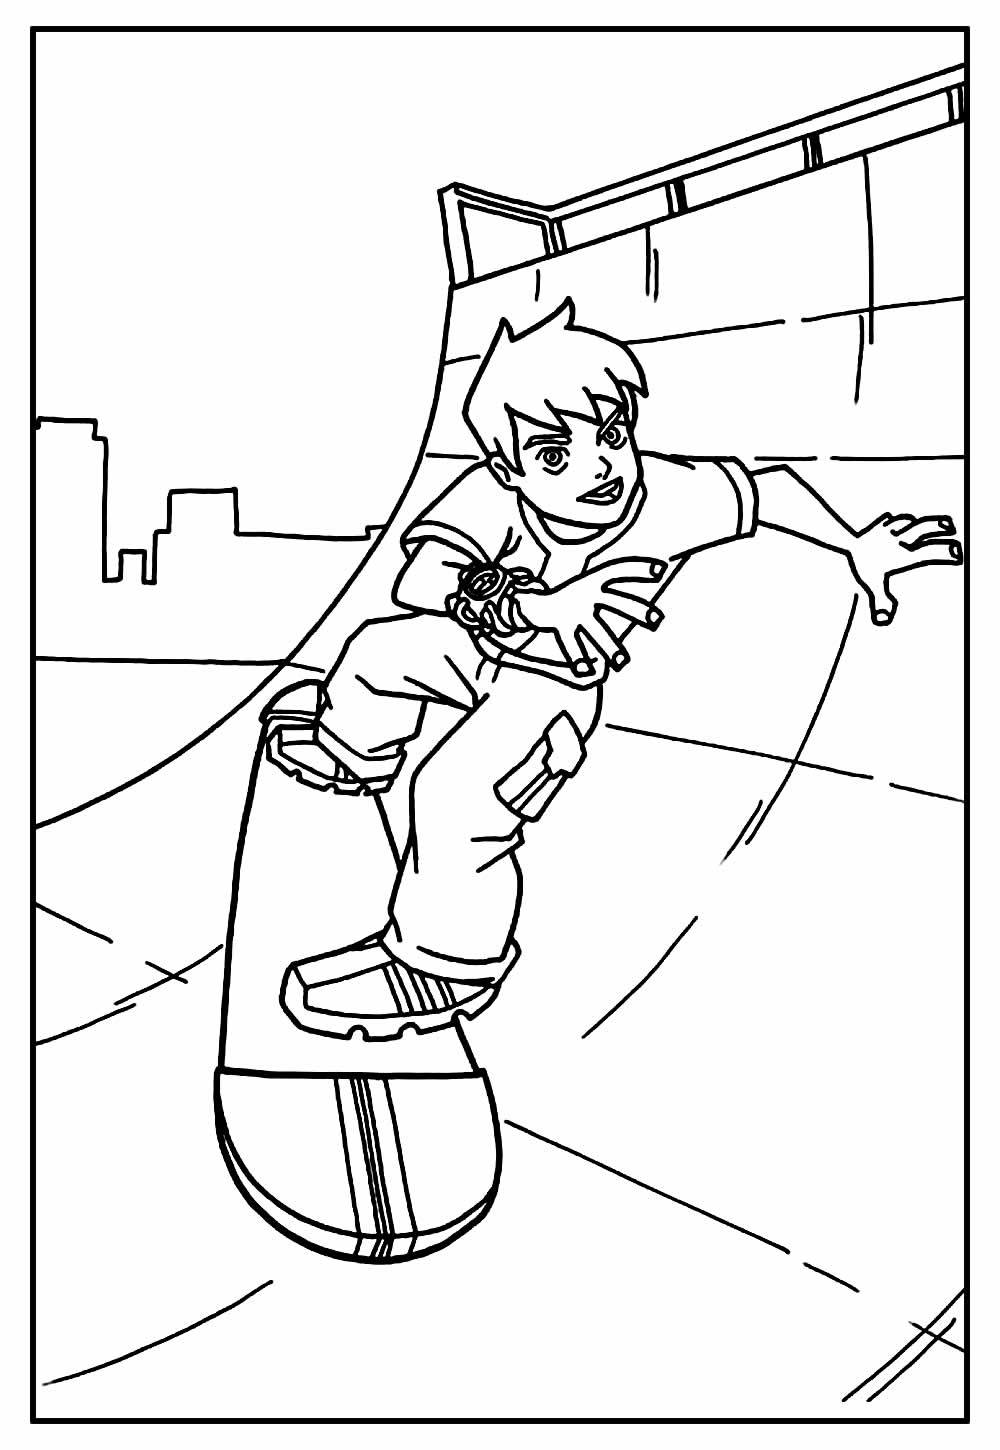 Desenho de Skate para colorir - Ben 10